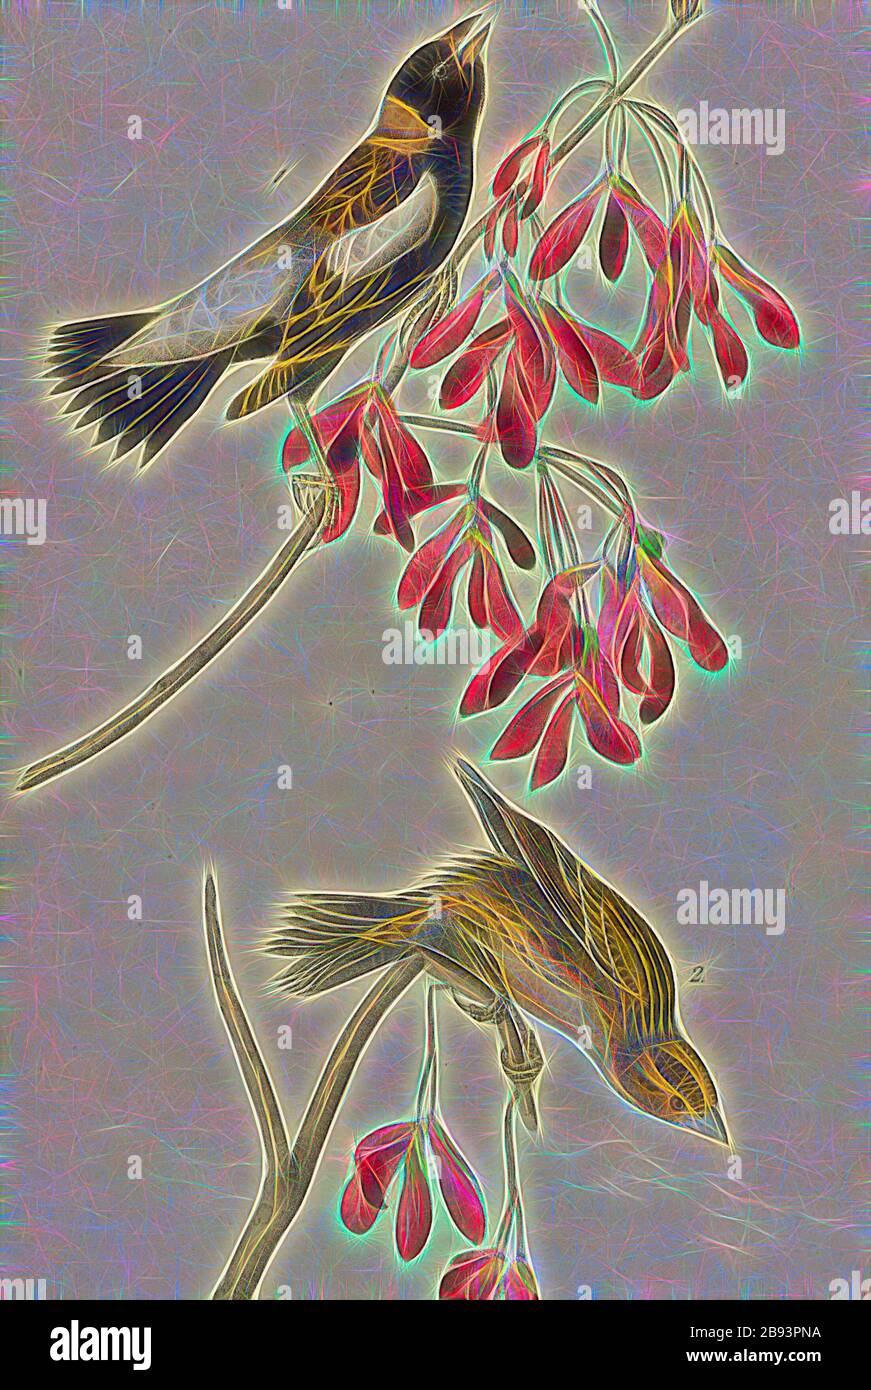 Vagabondaggio Rice-Bird - Red Maple Acer rubrum, riso-corteccia, anche Bobolink (Dolichonyx oryzivorus), acero rosso, firmato: J.J. Audubon, J.T. Bowen, litografia, Pl. 211 (vol 4), Audubon, John James (disegnato), Bowen, J. T. (lith.), 1856, John James Audubon: Gli uccelli d'America: Da disegni fatti negli Stati Uniti e nei loro territori. New York: Audubon, 1856, Reimaged by Gibon, design di calda allegra luce di luminosità e raggi di luce radianza. Arte classica reinventata con un tocco moderno. Fotografia ispirata al futurismo, che abbraccia l'energia dinamica della tecnologia moderna, del movimento, della velocità e della rivoluzione Foto Stock